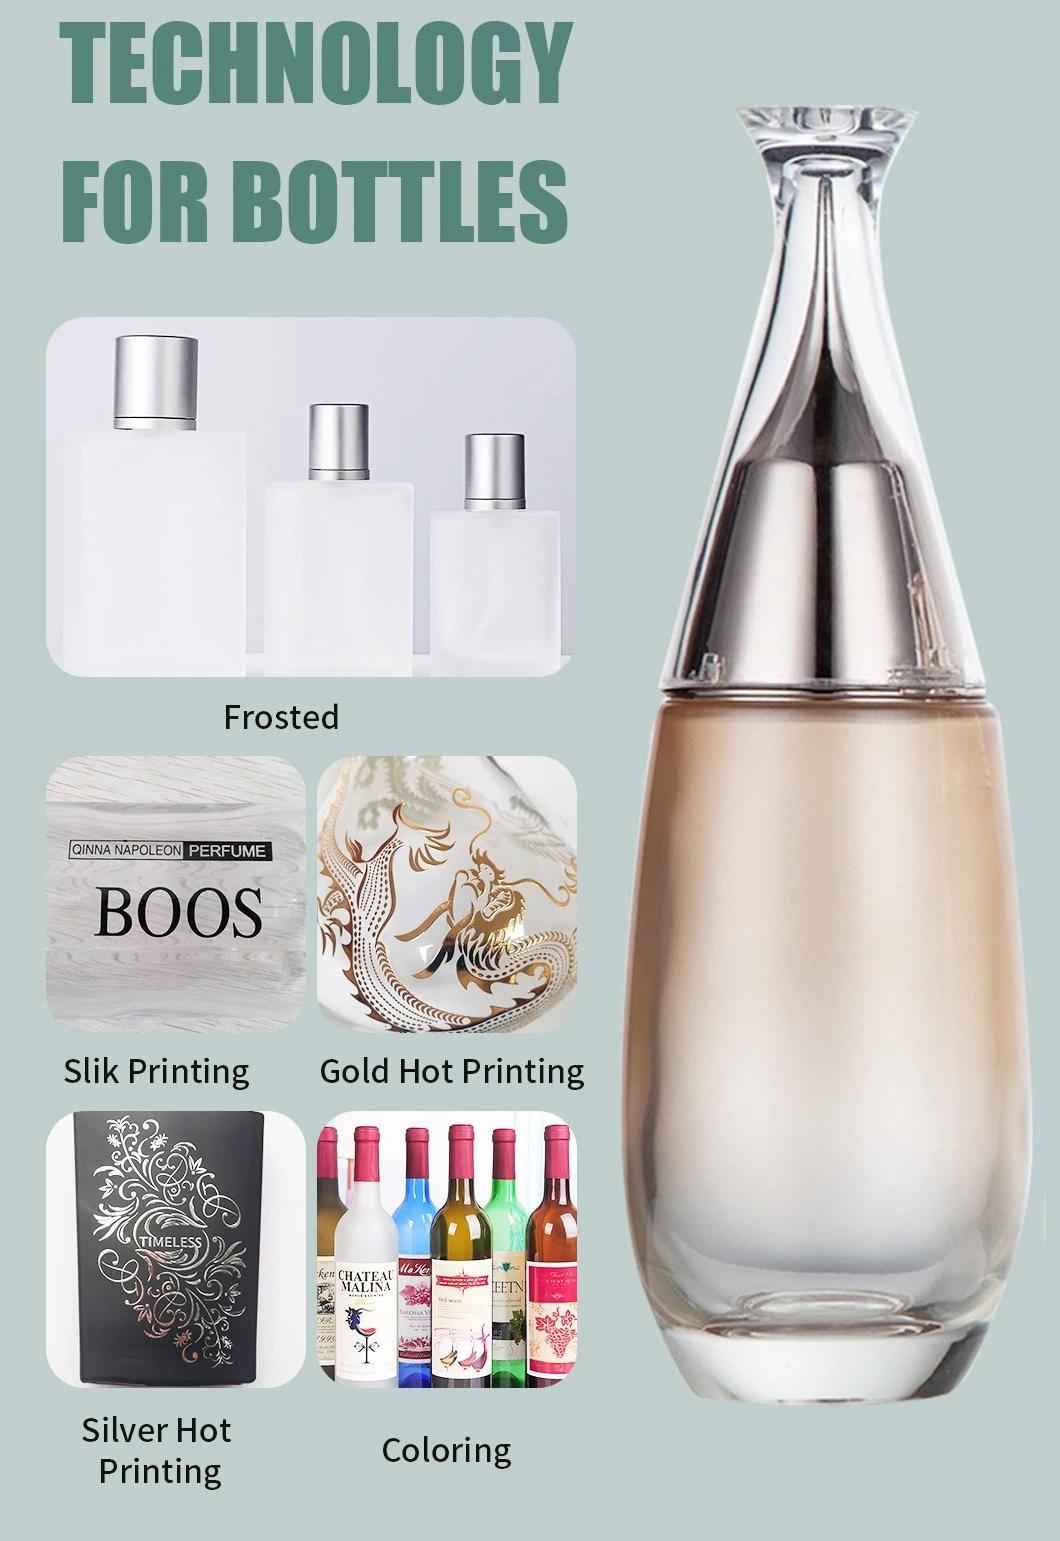 Thick Base Light Gold Fluid Pump Flat Shoulder Short Cylinder Cosmetic Glass Bottles